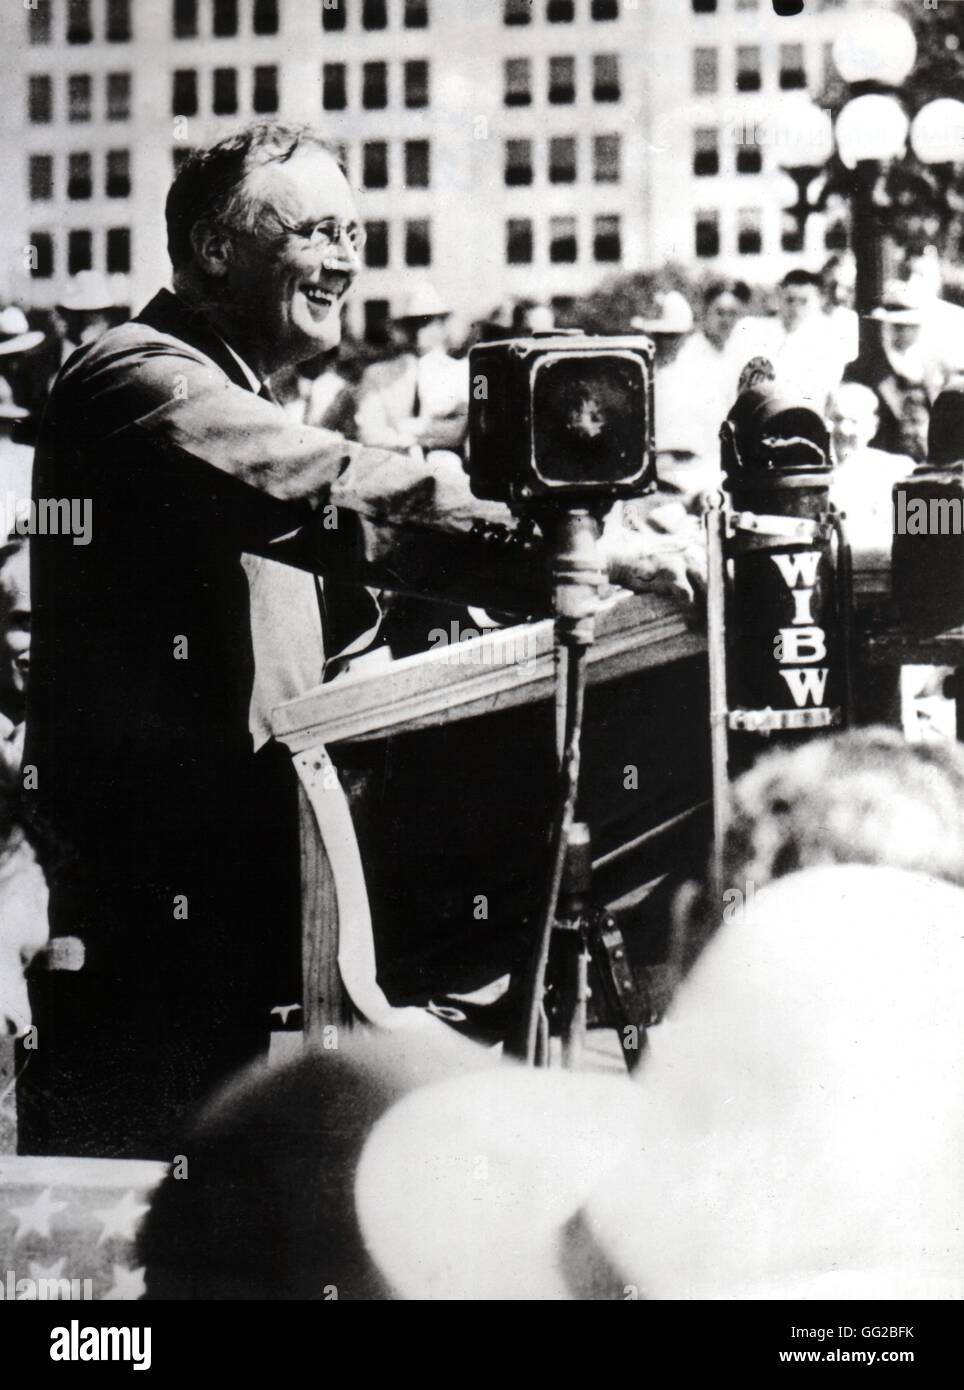 Franklin Delano Roosevelt à Atlanta au cours de la campagne électorale, novembre 1932 United States Paris. Bibliothèque nationale Banque D'Images